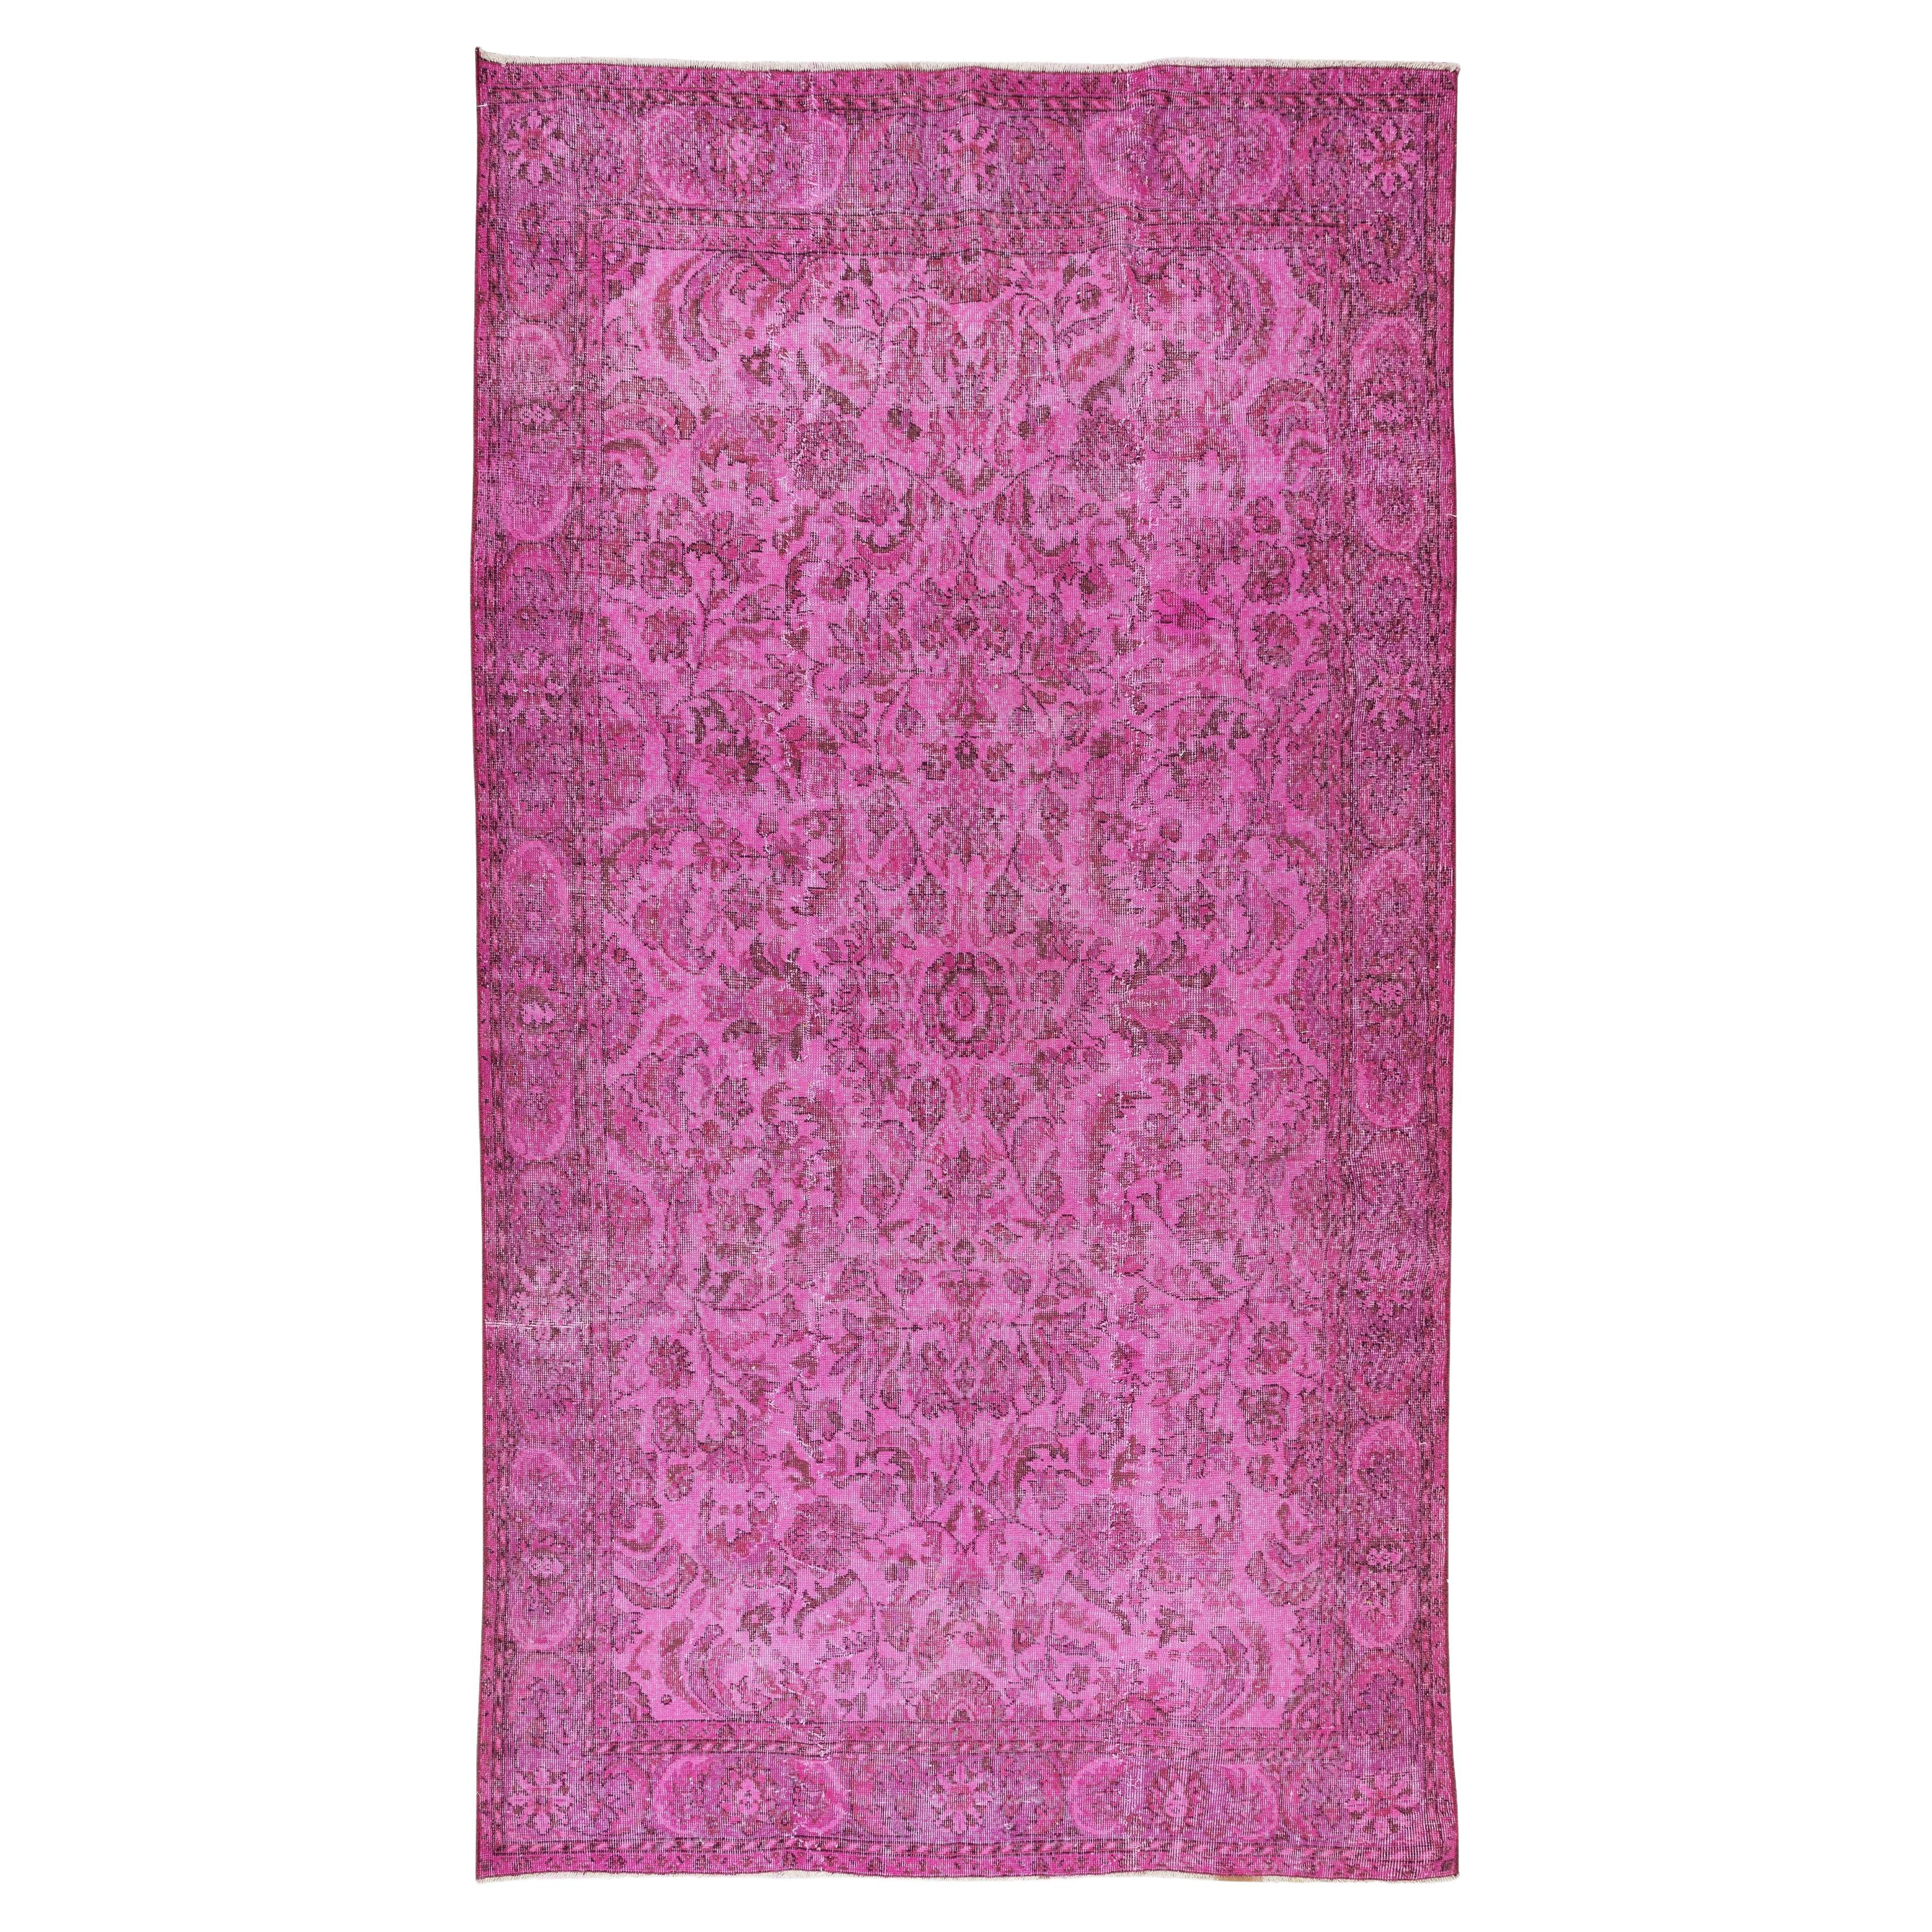 Tapis turc vintage teint en rose, design élégant, fait à la main